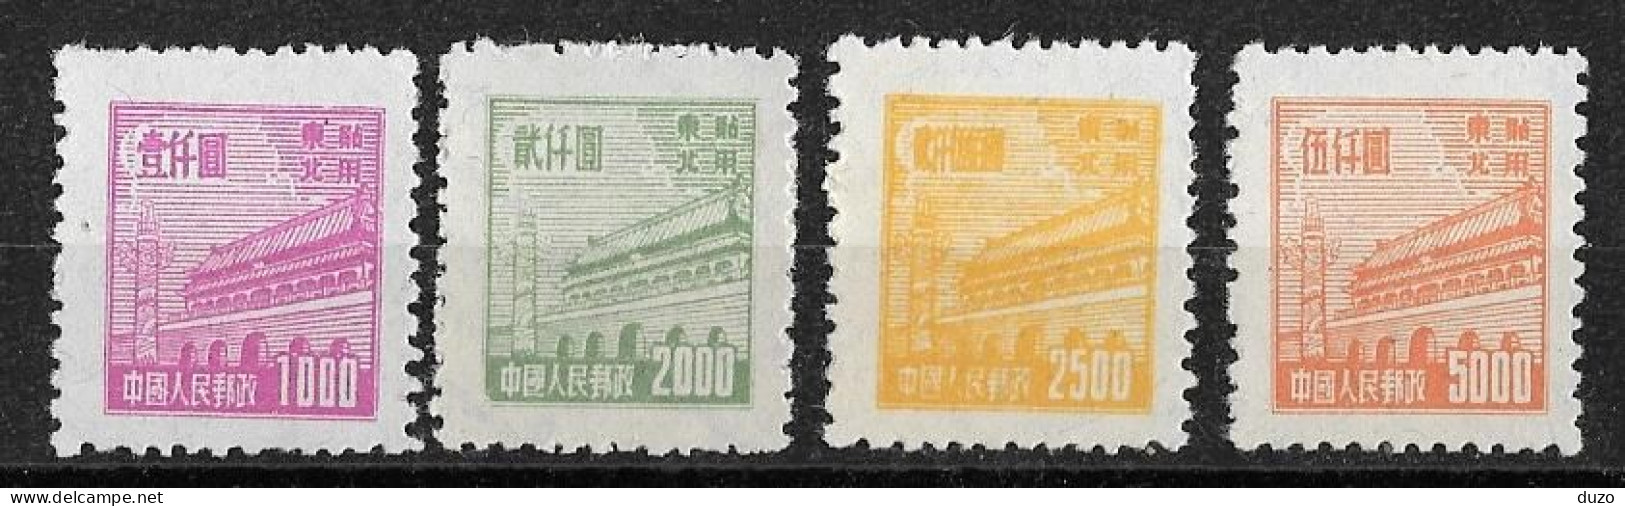 Chine Du Nord-Est 1950/51  - Tien-an-Men (Pékin) - YT N° 127/128/129/130 émis Neuf Sans Gomme - Cina Del Nord-Est 1946-48